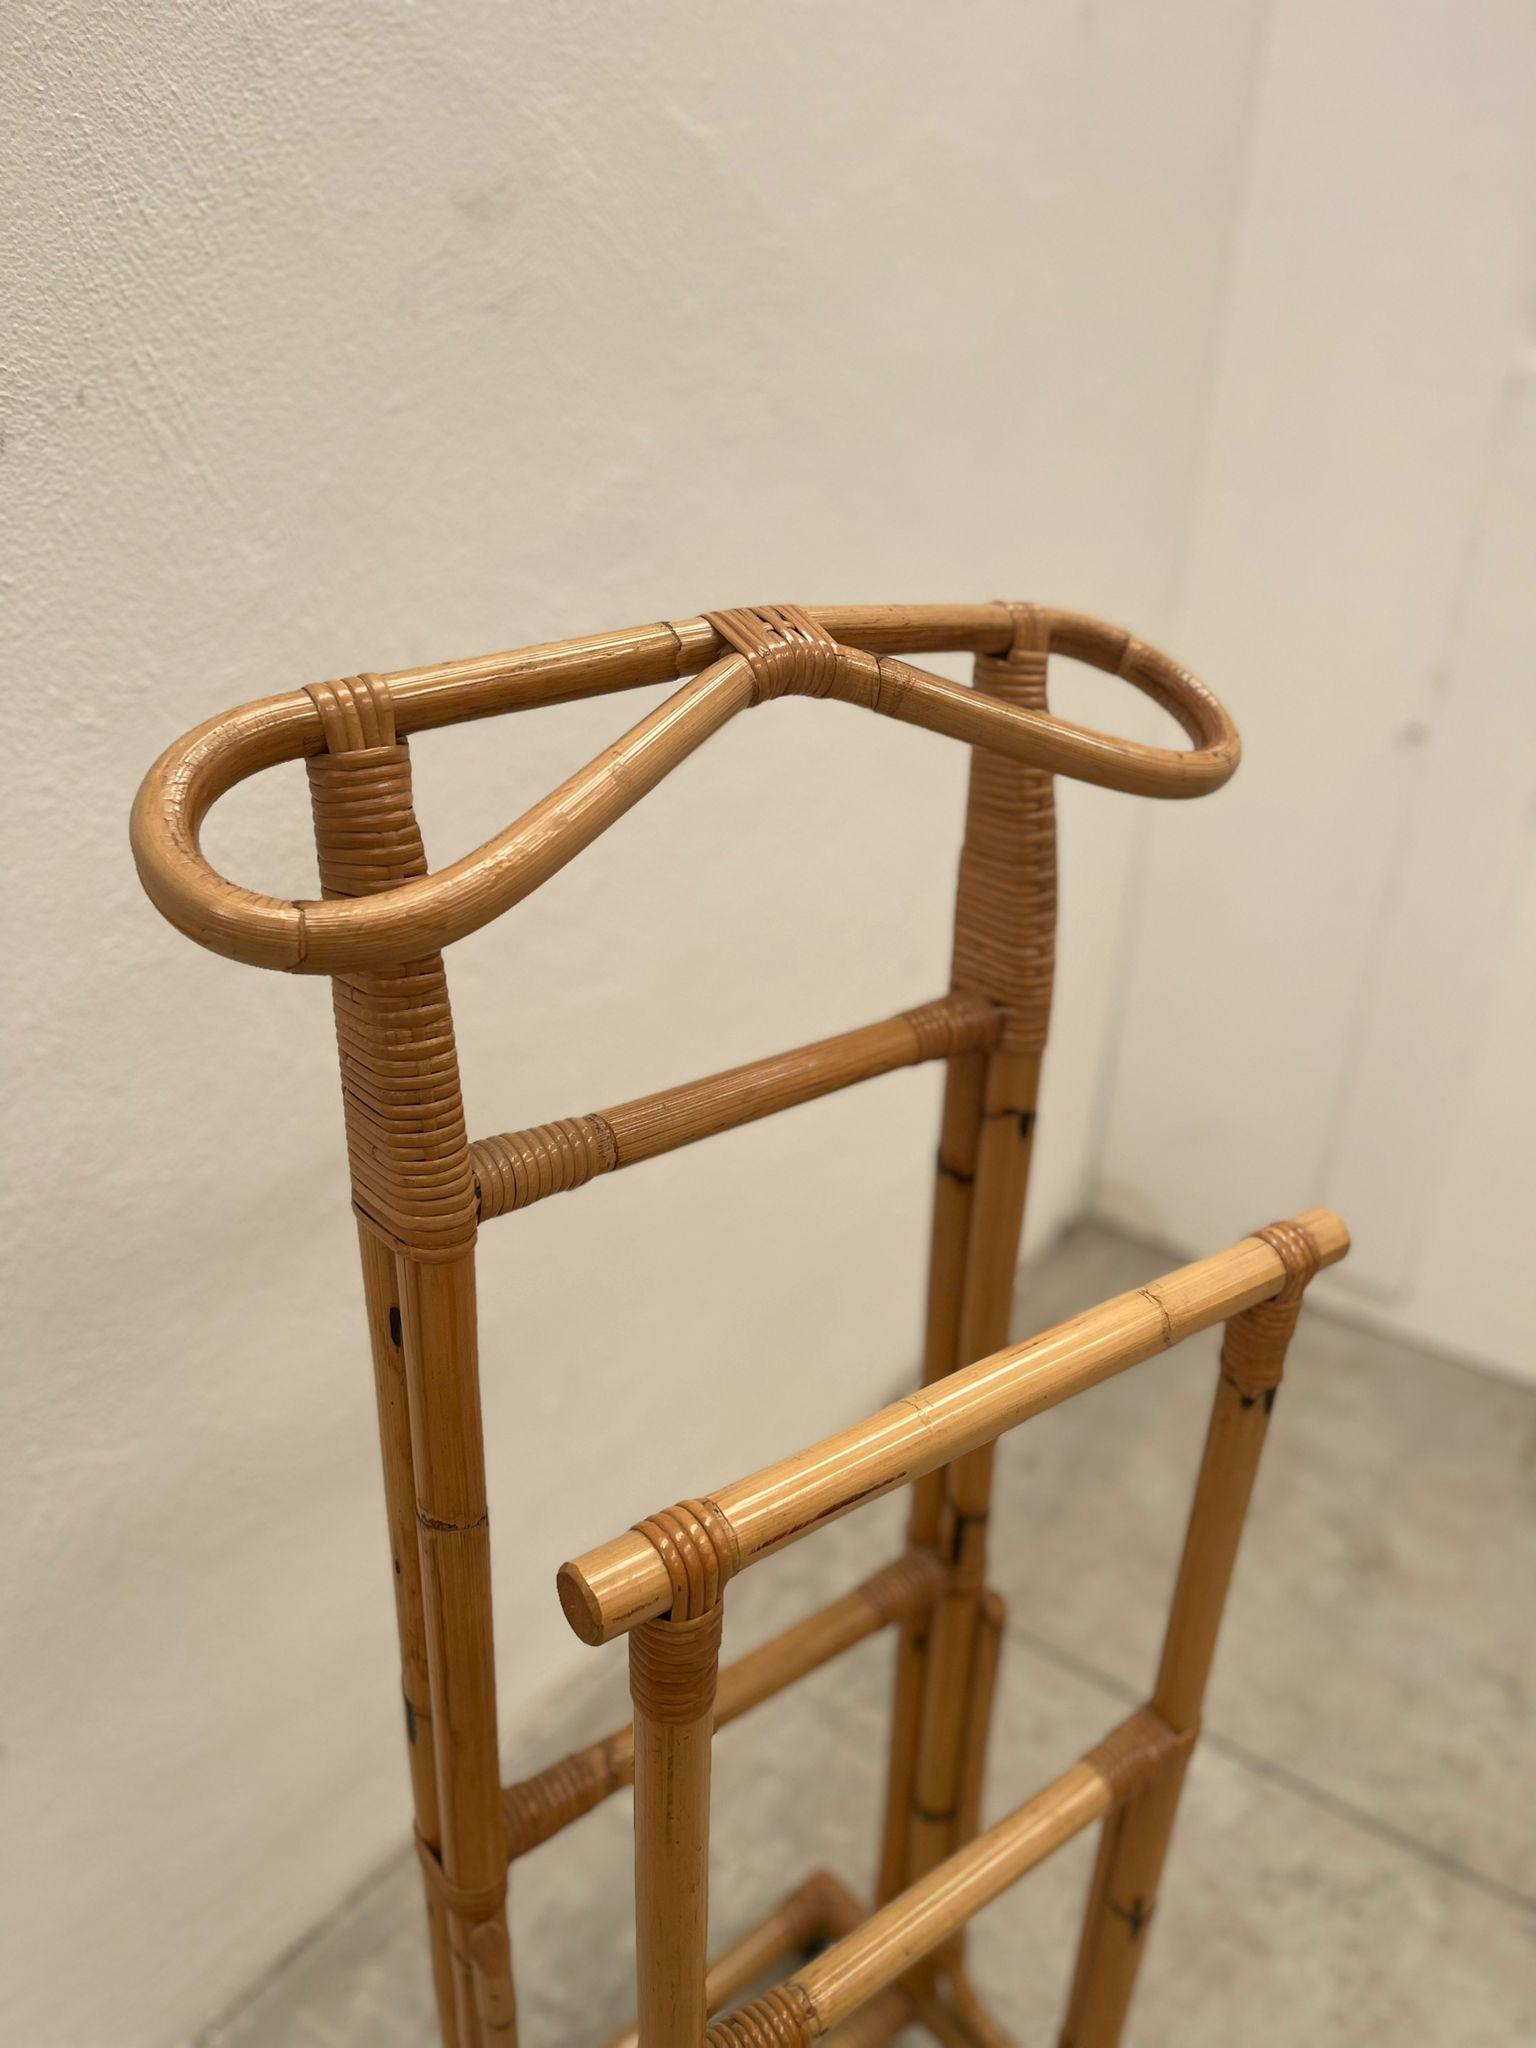 Aus Bambus gefertigt, ist es ein klassisches Stück, ideal für Liebhaber des Minimalismus. Leicht zu bewegen dank der Räder.

Privatsammlung Di Domenico Rugiano